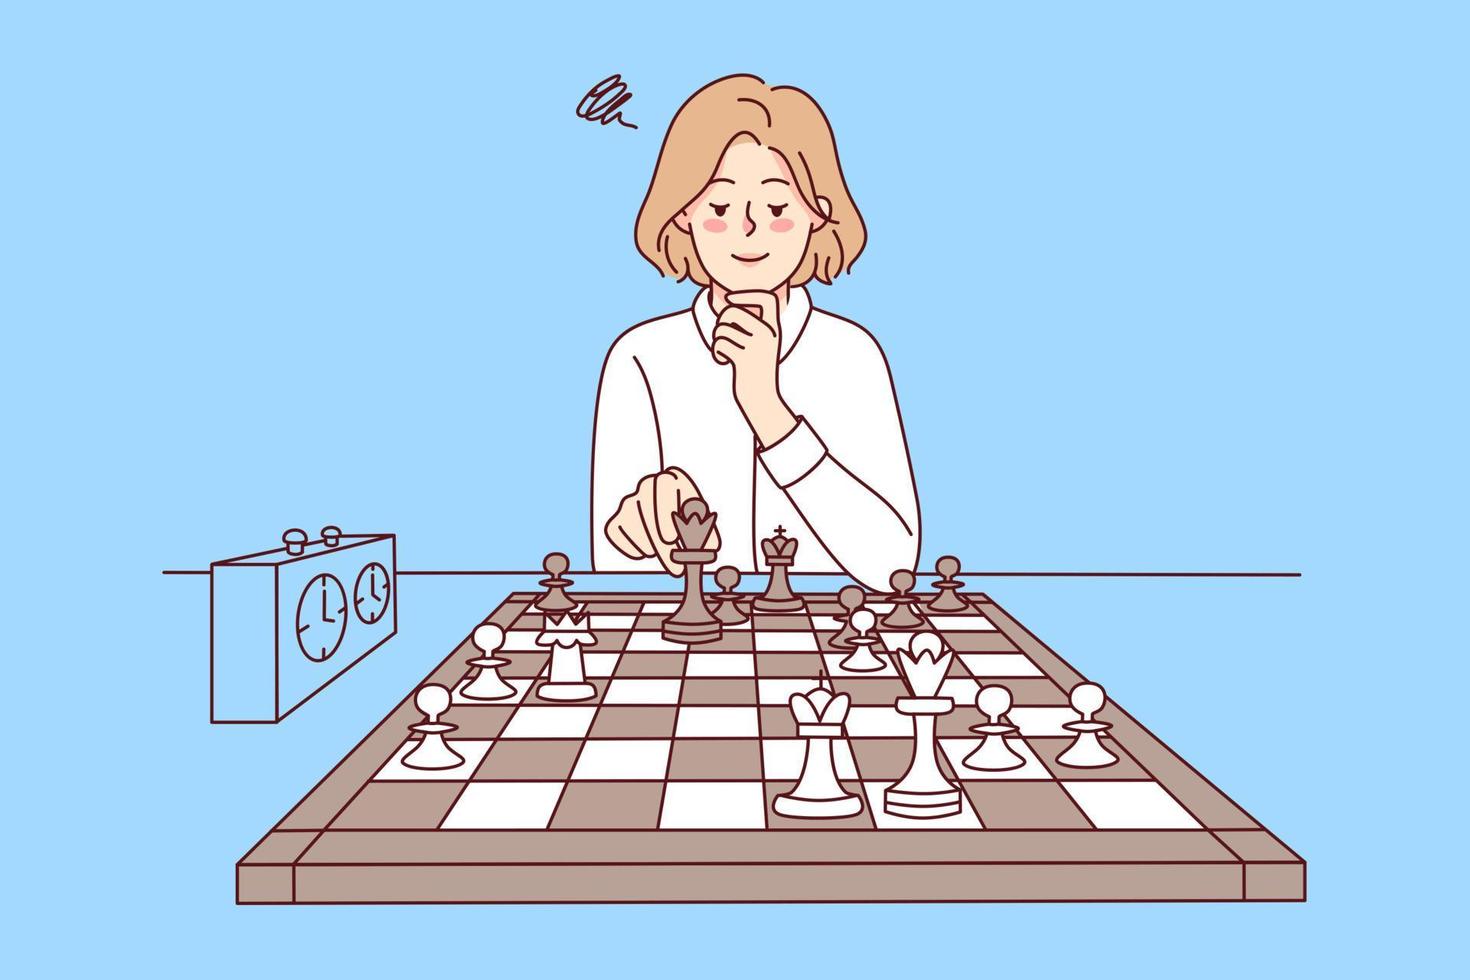 menina tendo aula de xadrez online, e-educação, ensino à distância 8429094  Foto de stock no Vecteezy